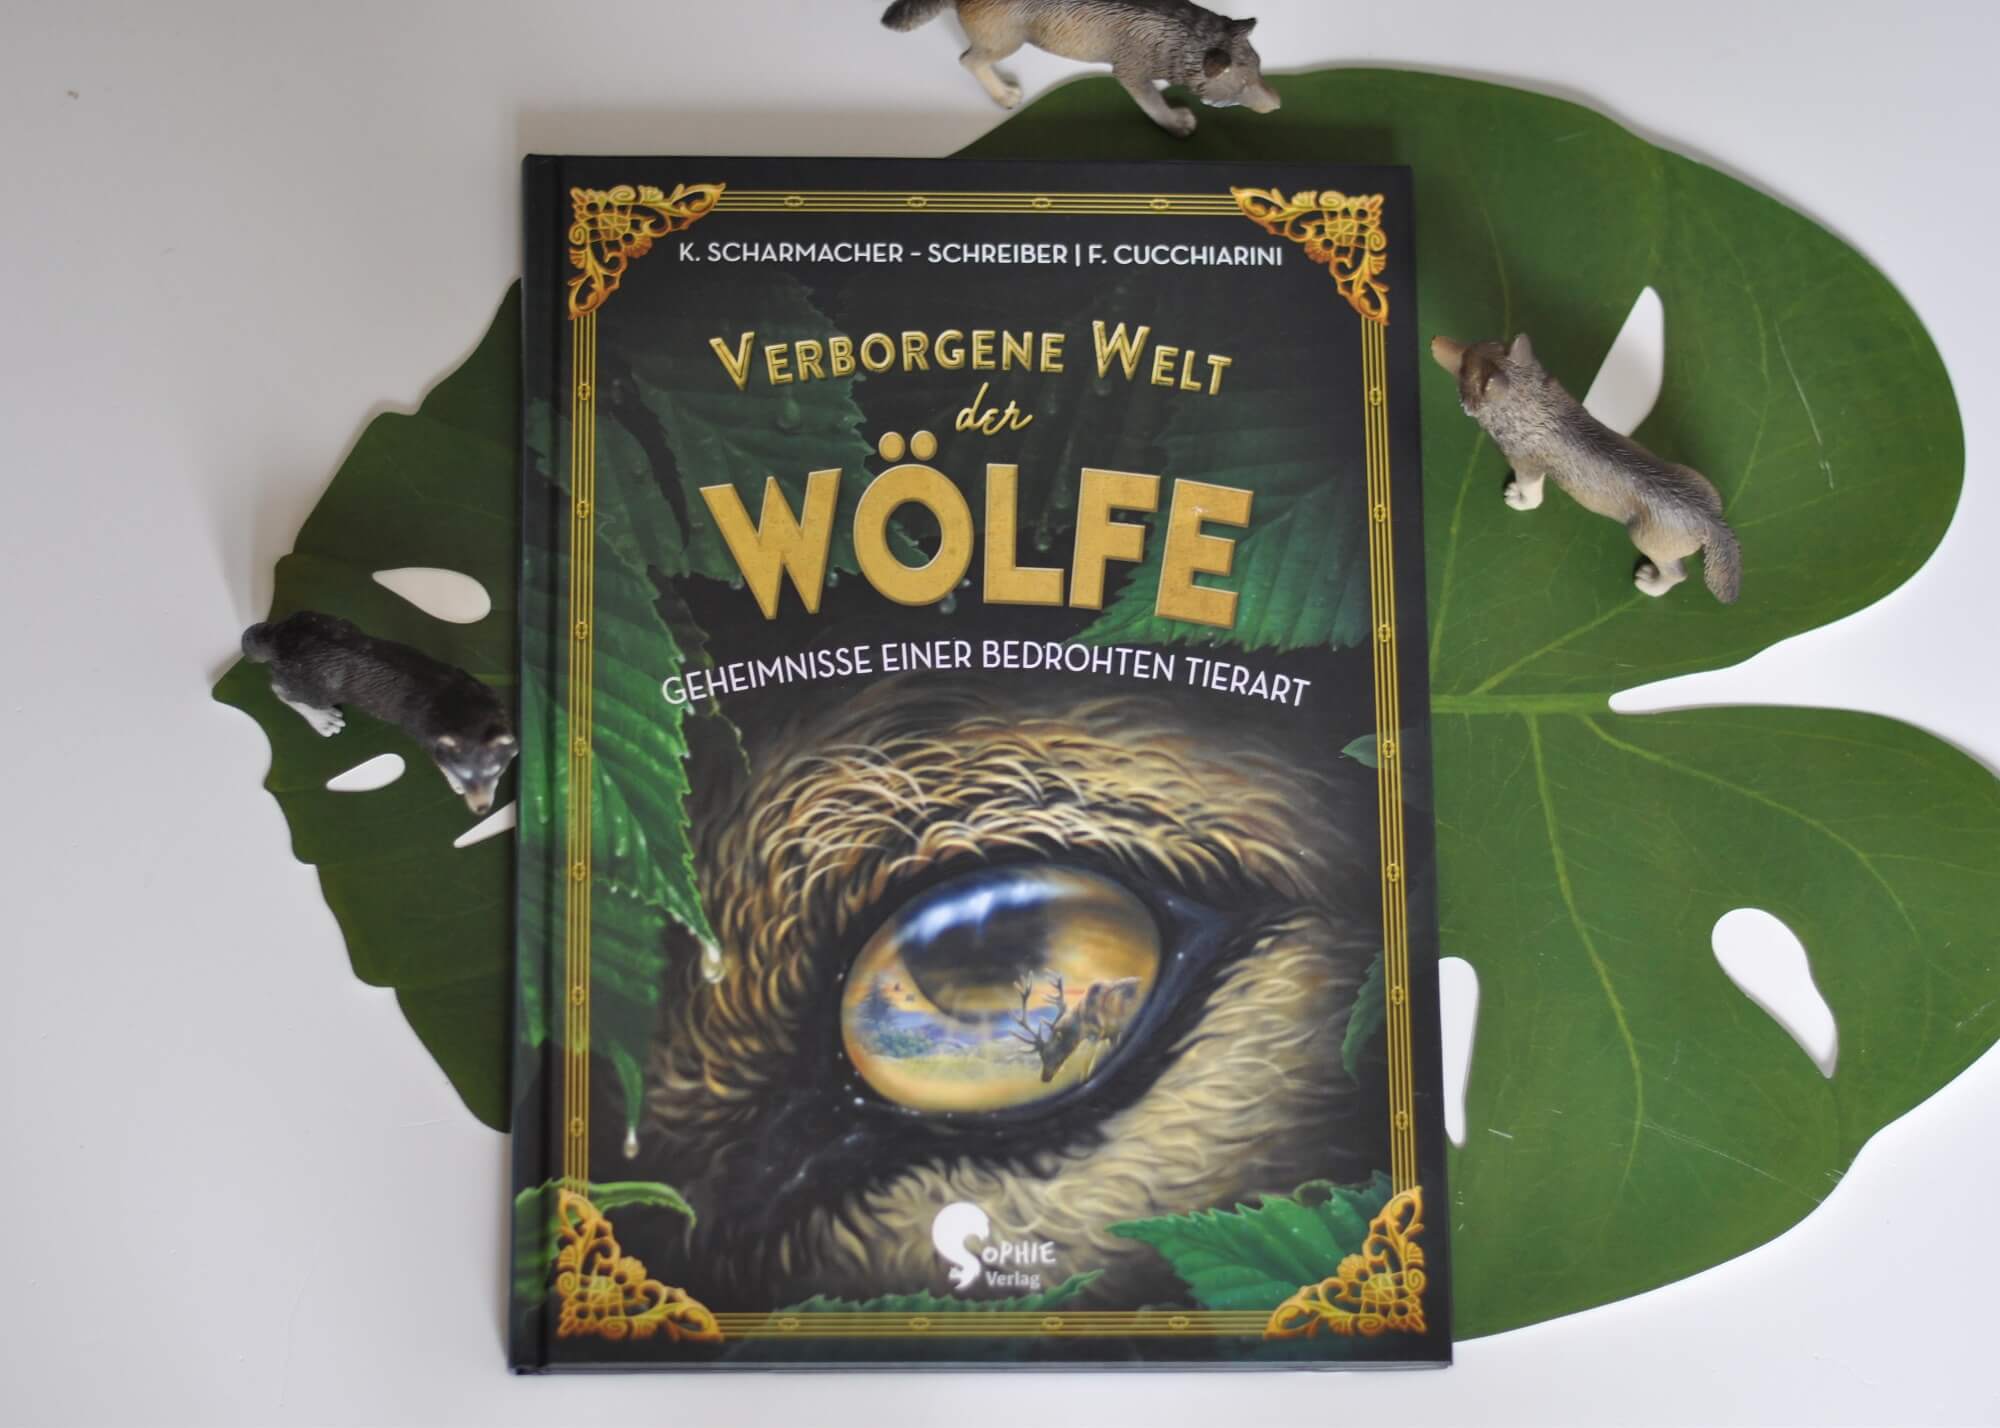 Nele zeltet mit ihrer Klasse im Wald, als sie nachts einen Wolf in der Ferne heulten hört. Doch ist das überhaupt möglich? Nele beschließt, der Sache auf den Grund zu gehen und später vielleicht einen Beitrag über Wölfe für die Kinderbeilage der Lokalzeitung zu verfassen. Ab jetzt tauchen die Leser ein in die geheimnisvolle Welt der Wölfe. #sachbuch #wolf #wölfe #recherche #zeitung #schreiben #lernen #wald #wolf #lesen #buch #kinder